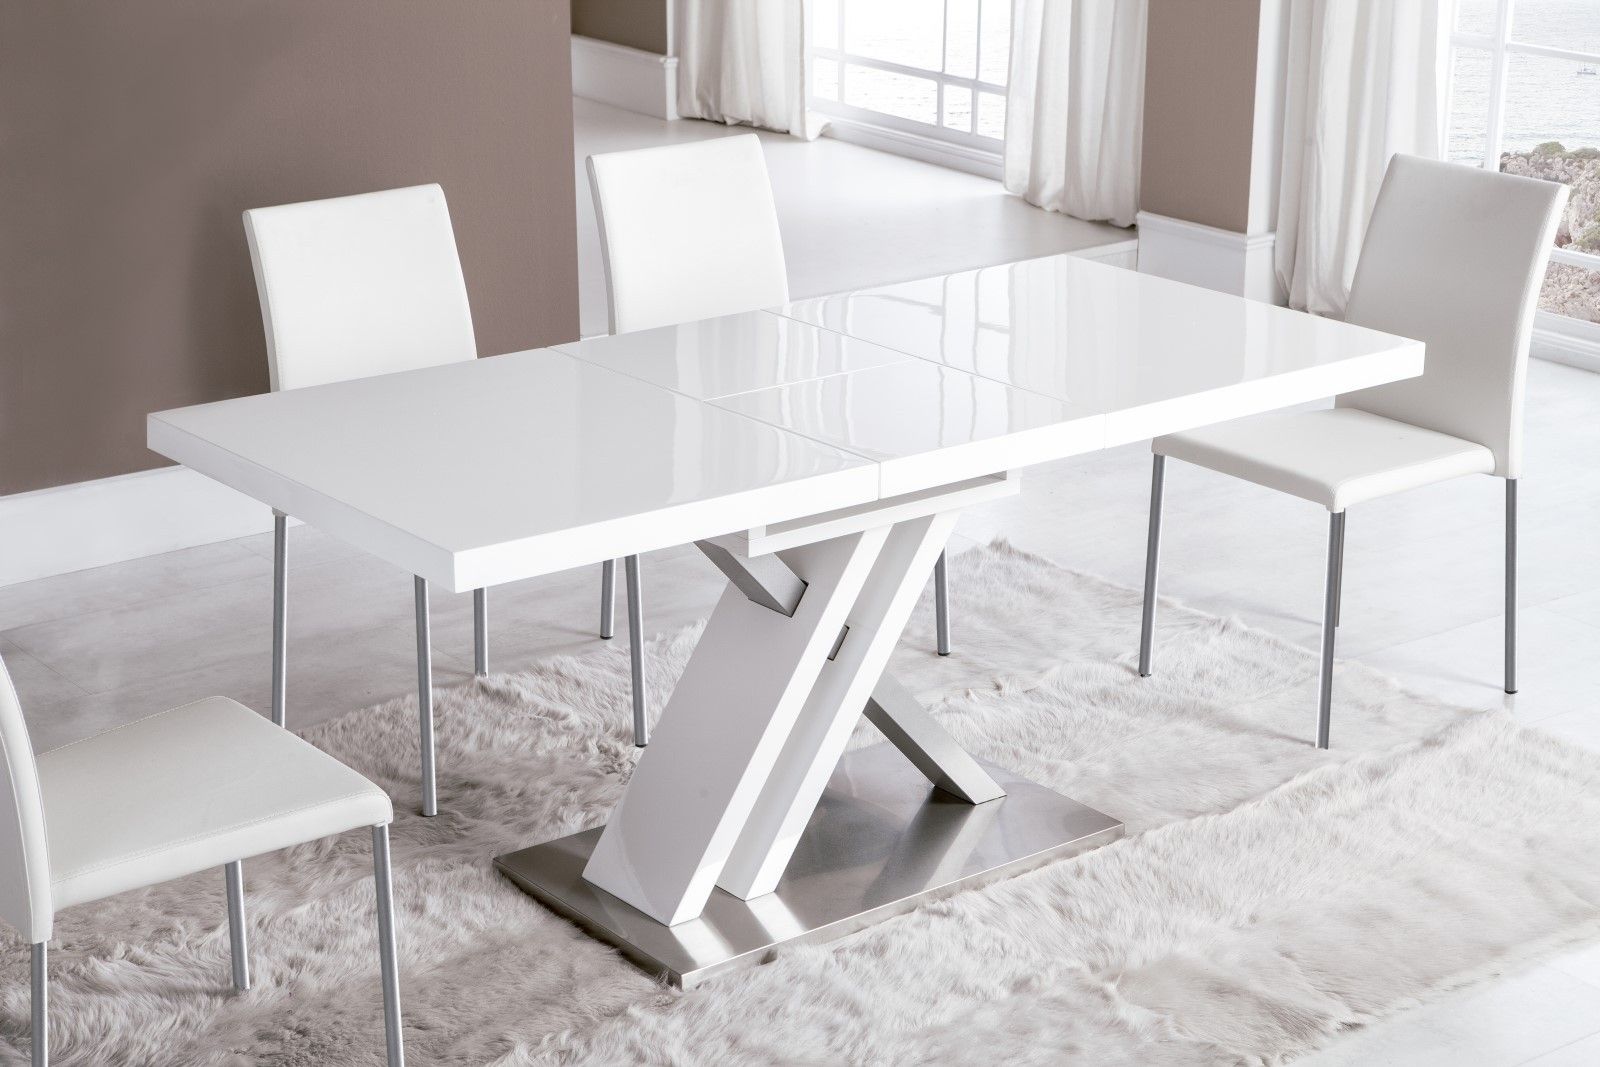 Estila Moderný obdĺžnikový rozkladací jedálenský stôl Brillante v lesklej bielej farbe s kovovou podstavou atypického tvaru 130(170)cm